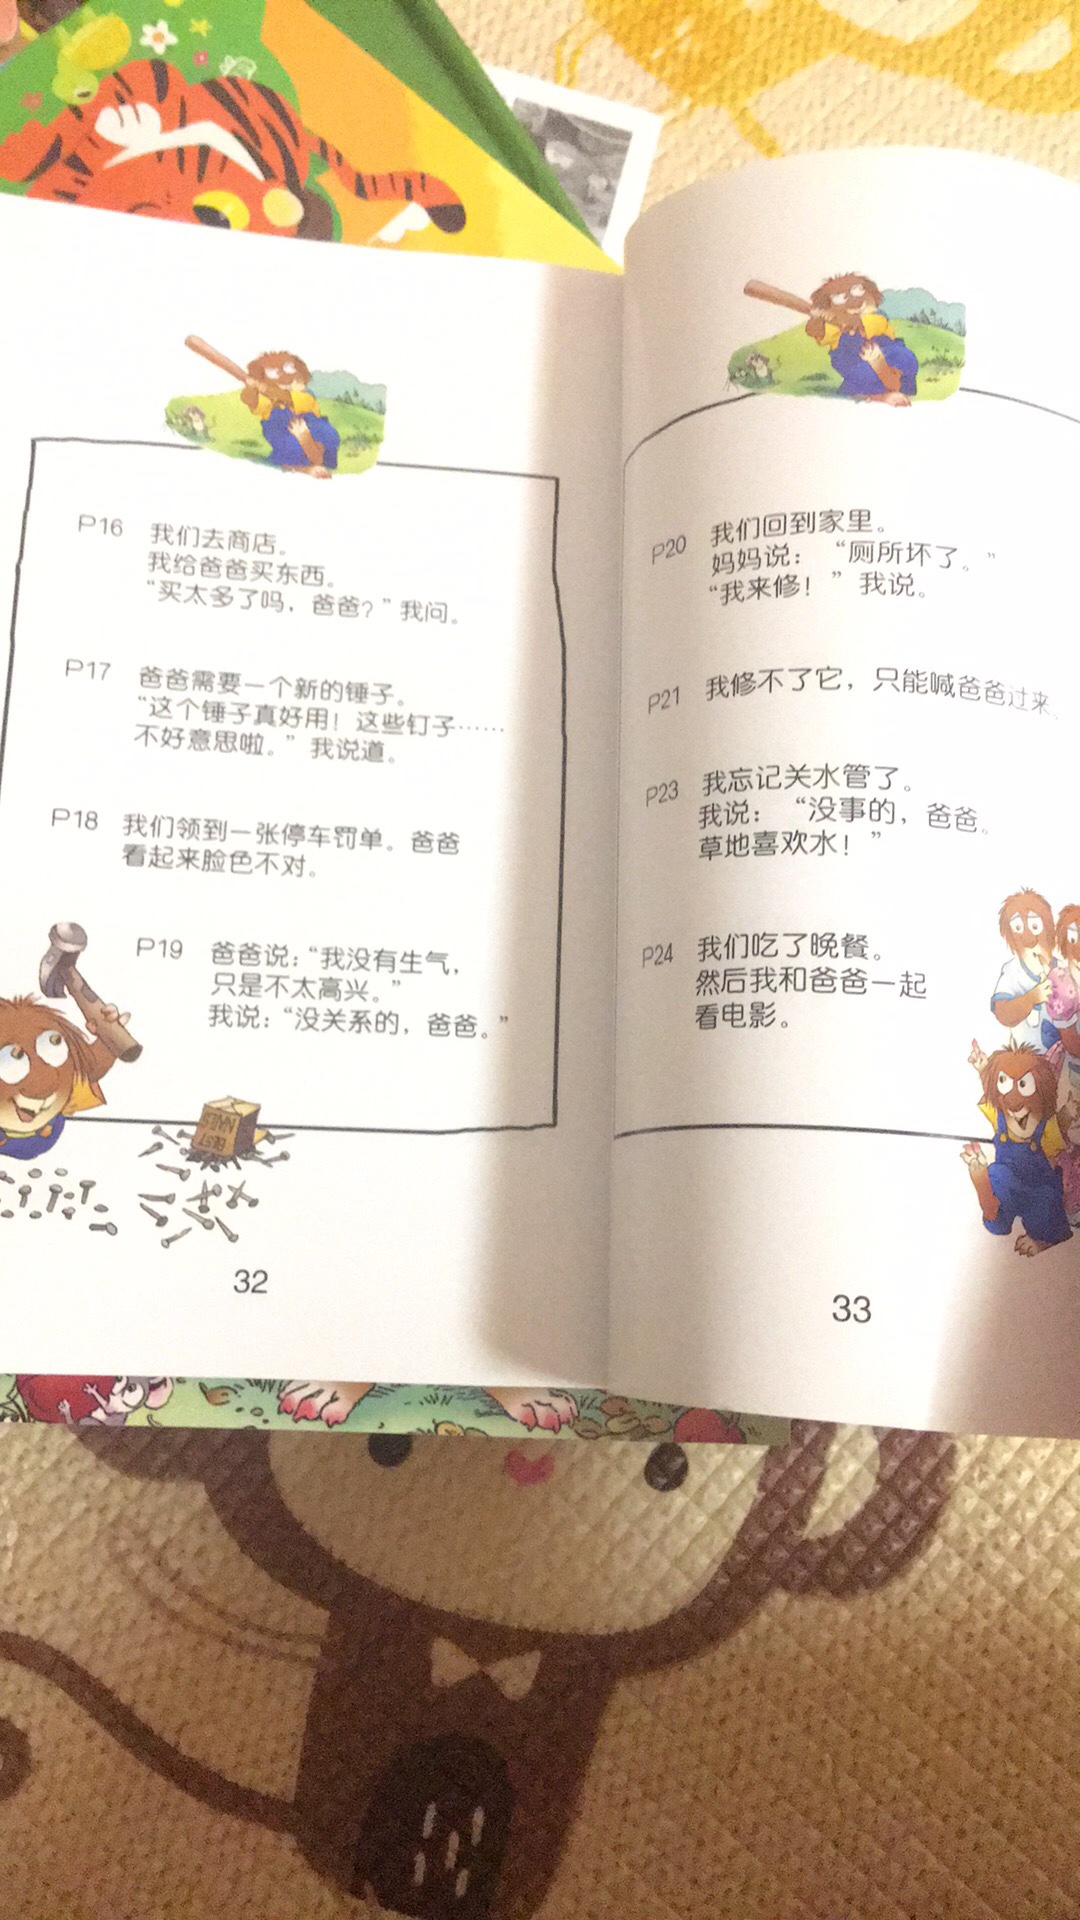 双语绘本确实比原版便宜啊，这个也不影响阅读，因为中文翻译在最后，前面也是英文的，孩子比较喜欢去海洋公园的那一本。单词比较简单，句子也有重复适合启蒙，很不错